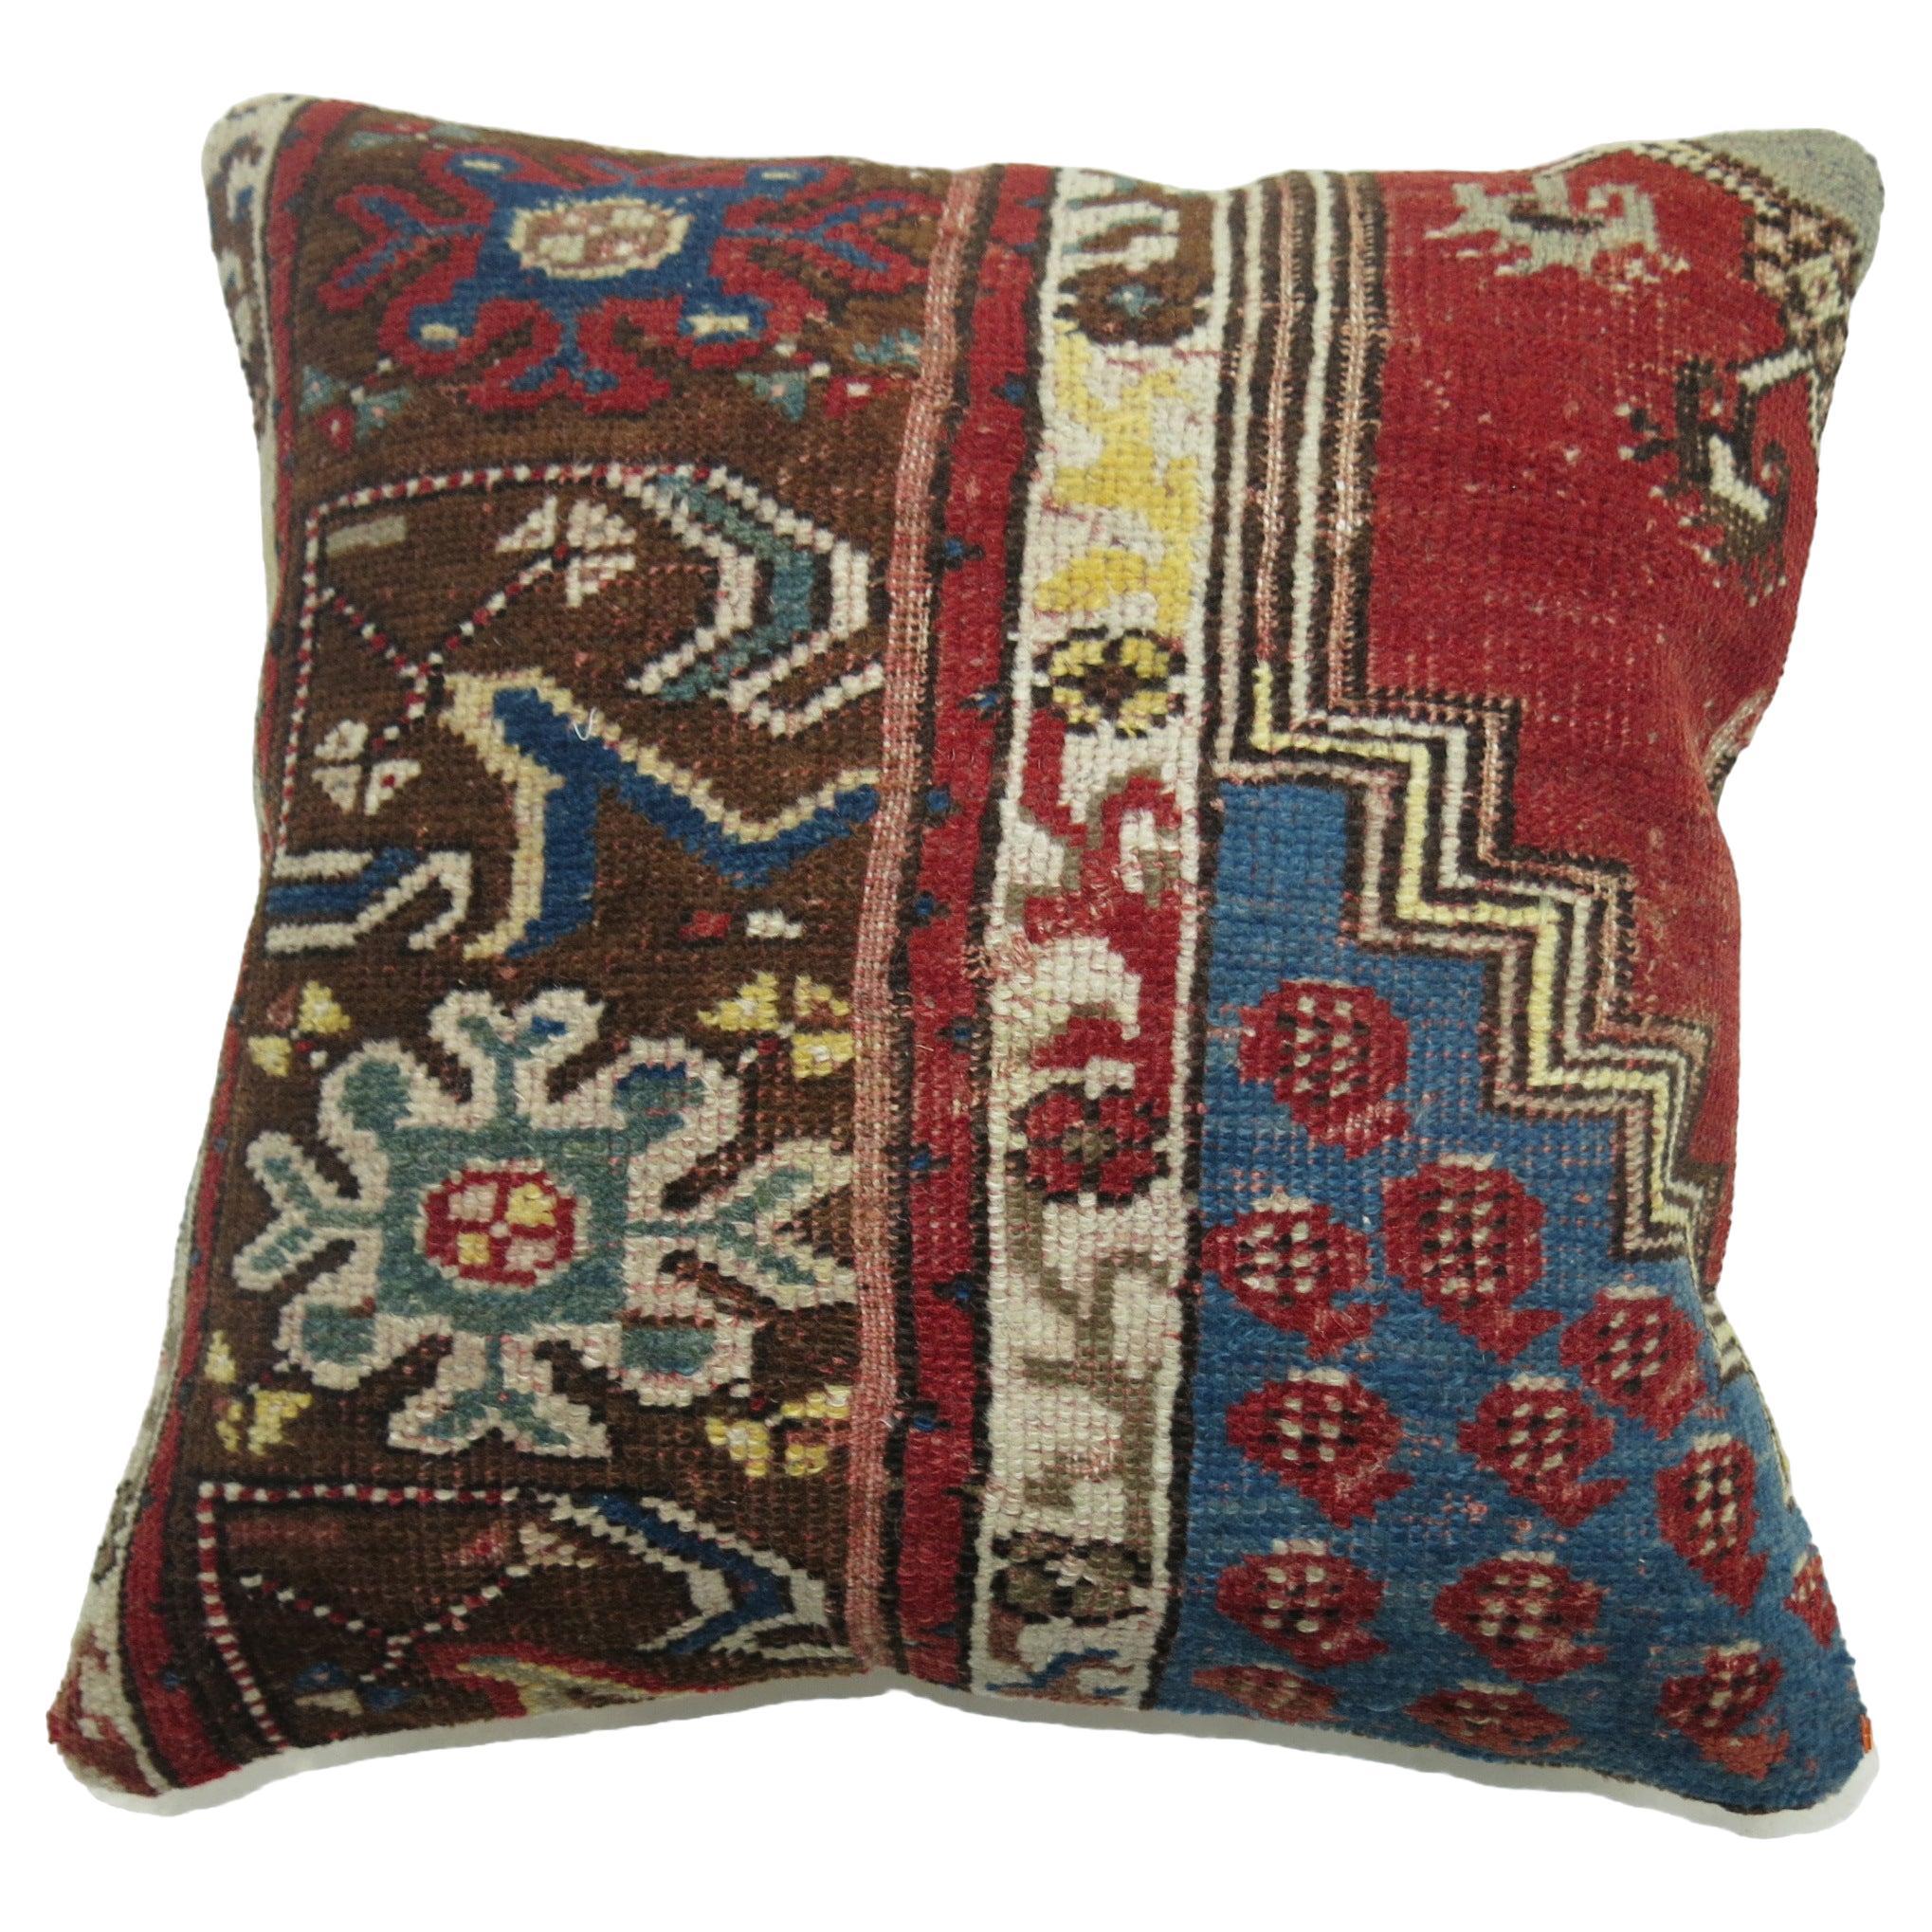 Oreiller réalisé à partir d'un tapis turc vintage dans les tons rouges et bleus.

17'' x 18''